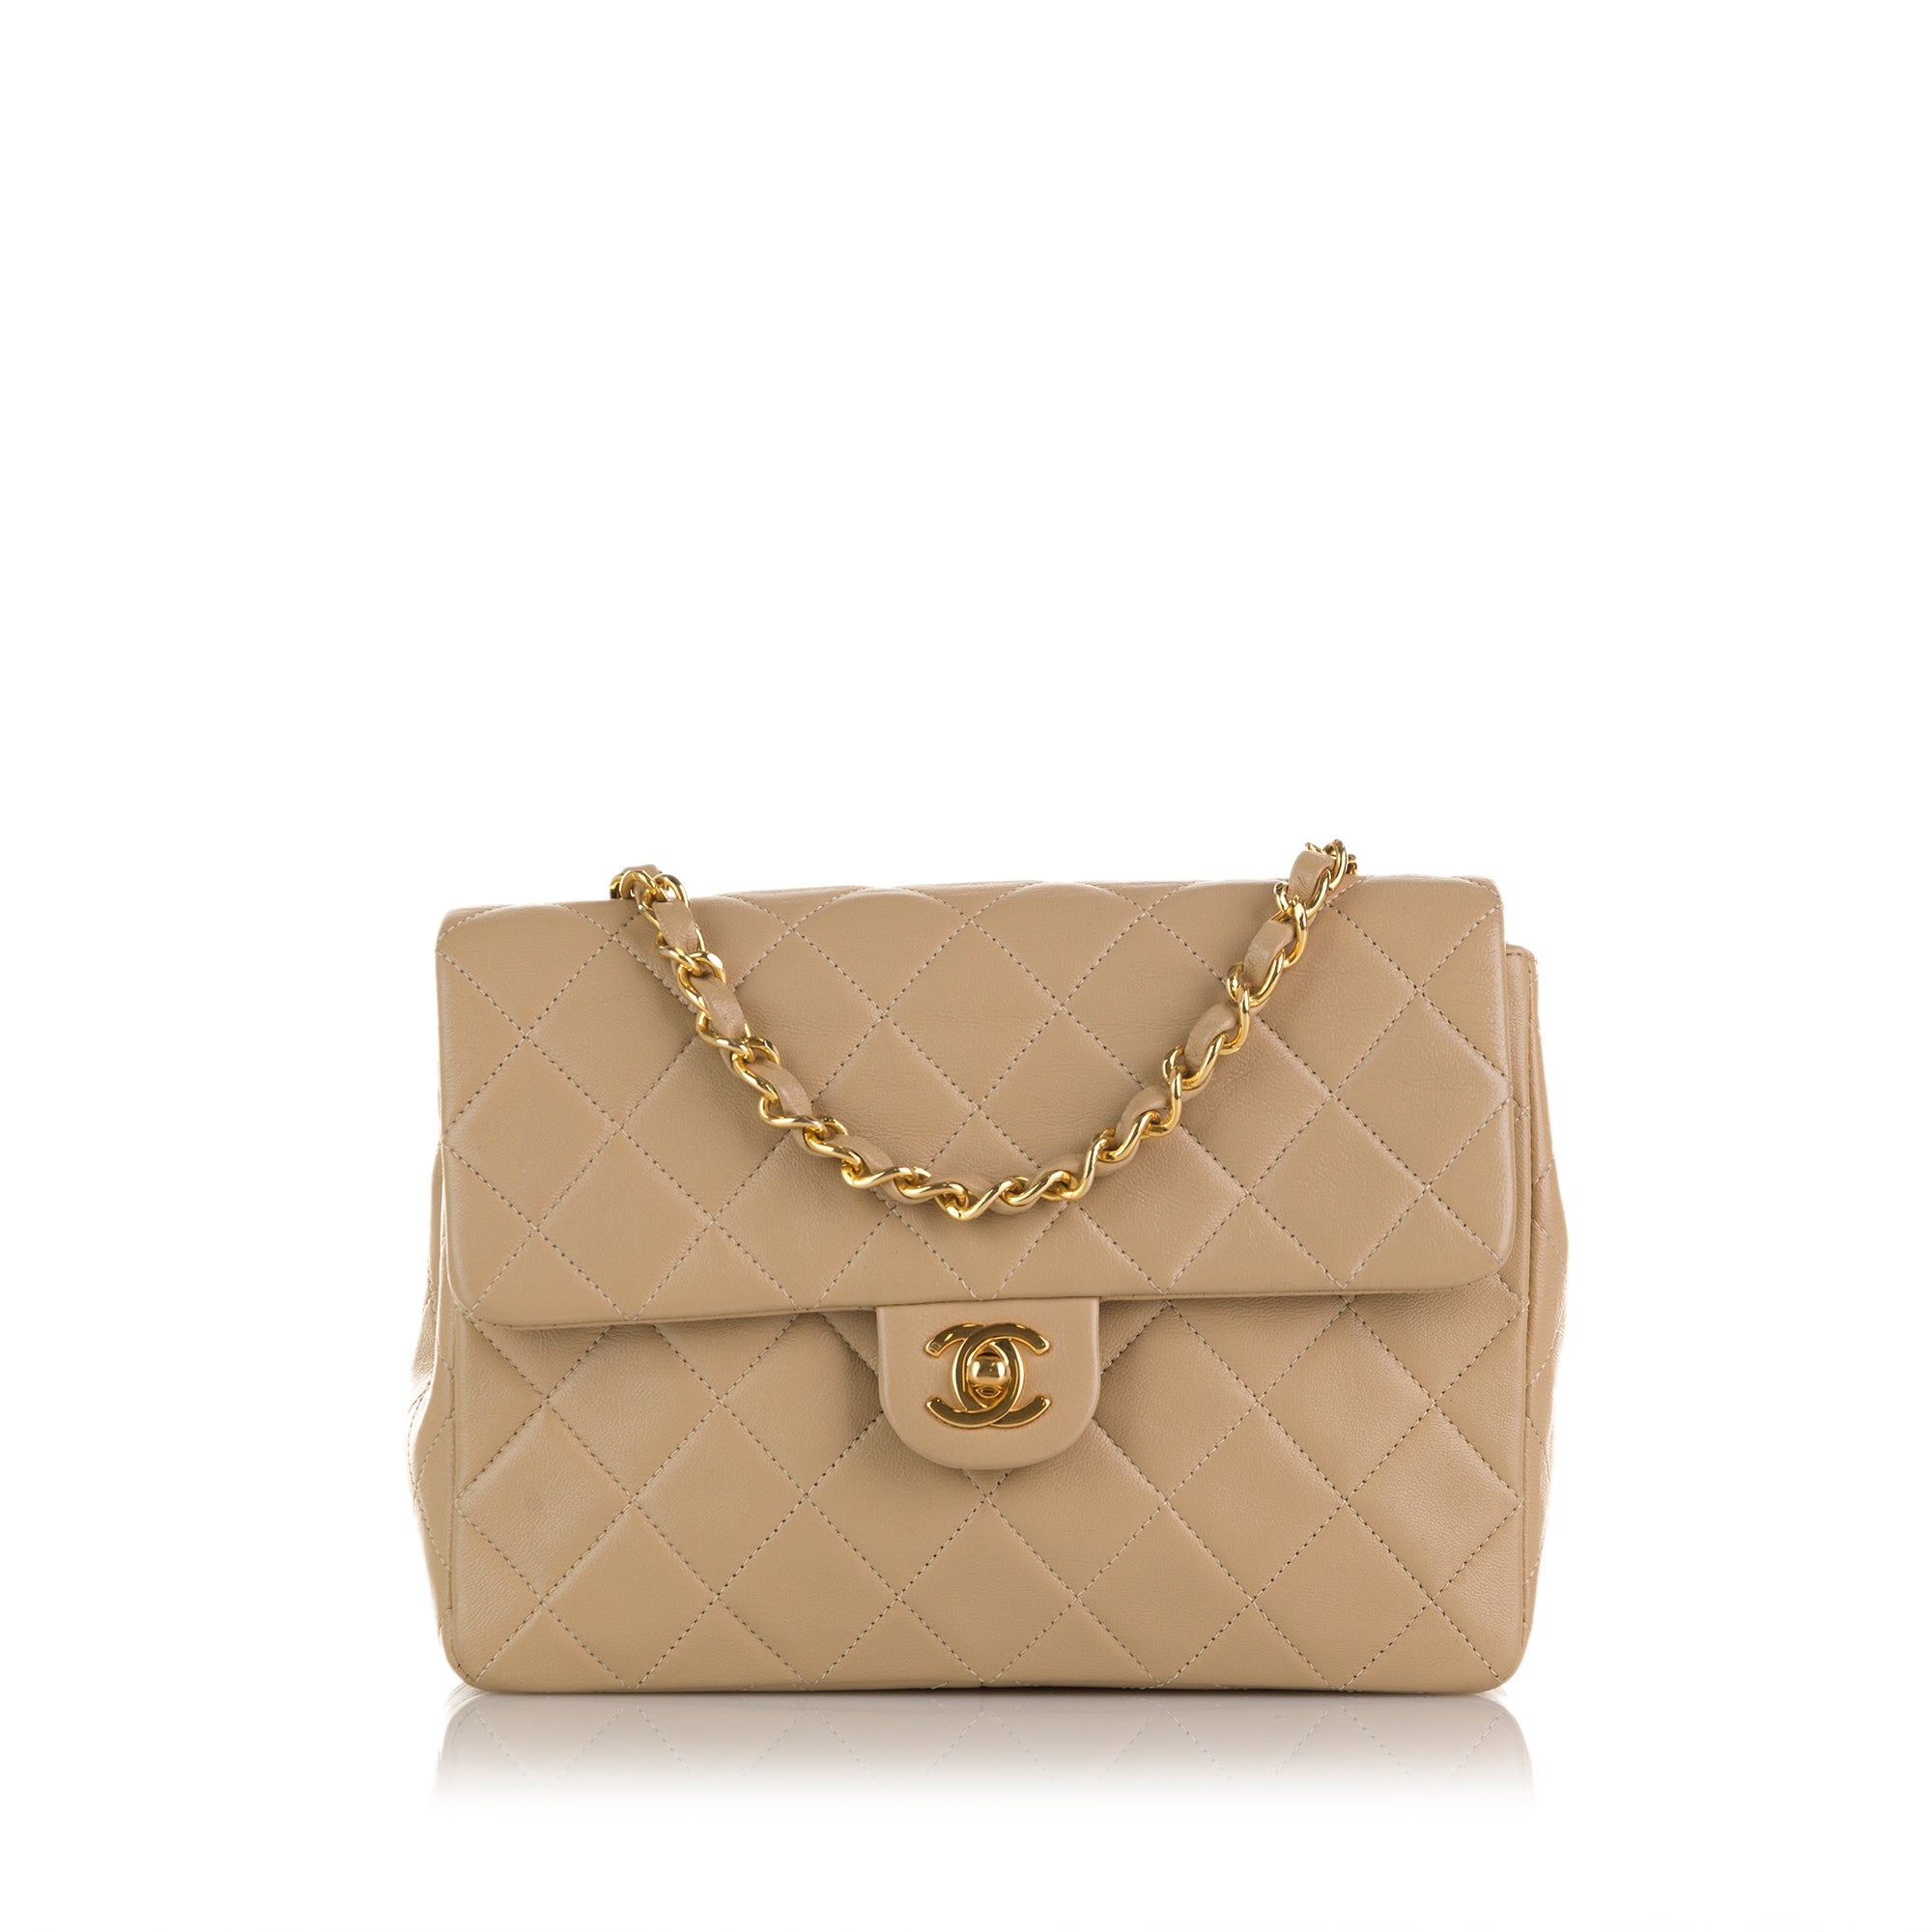 Chanel - Mini Classic Flap Bag Beige